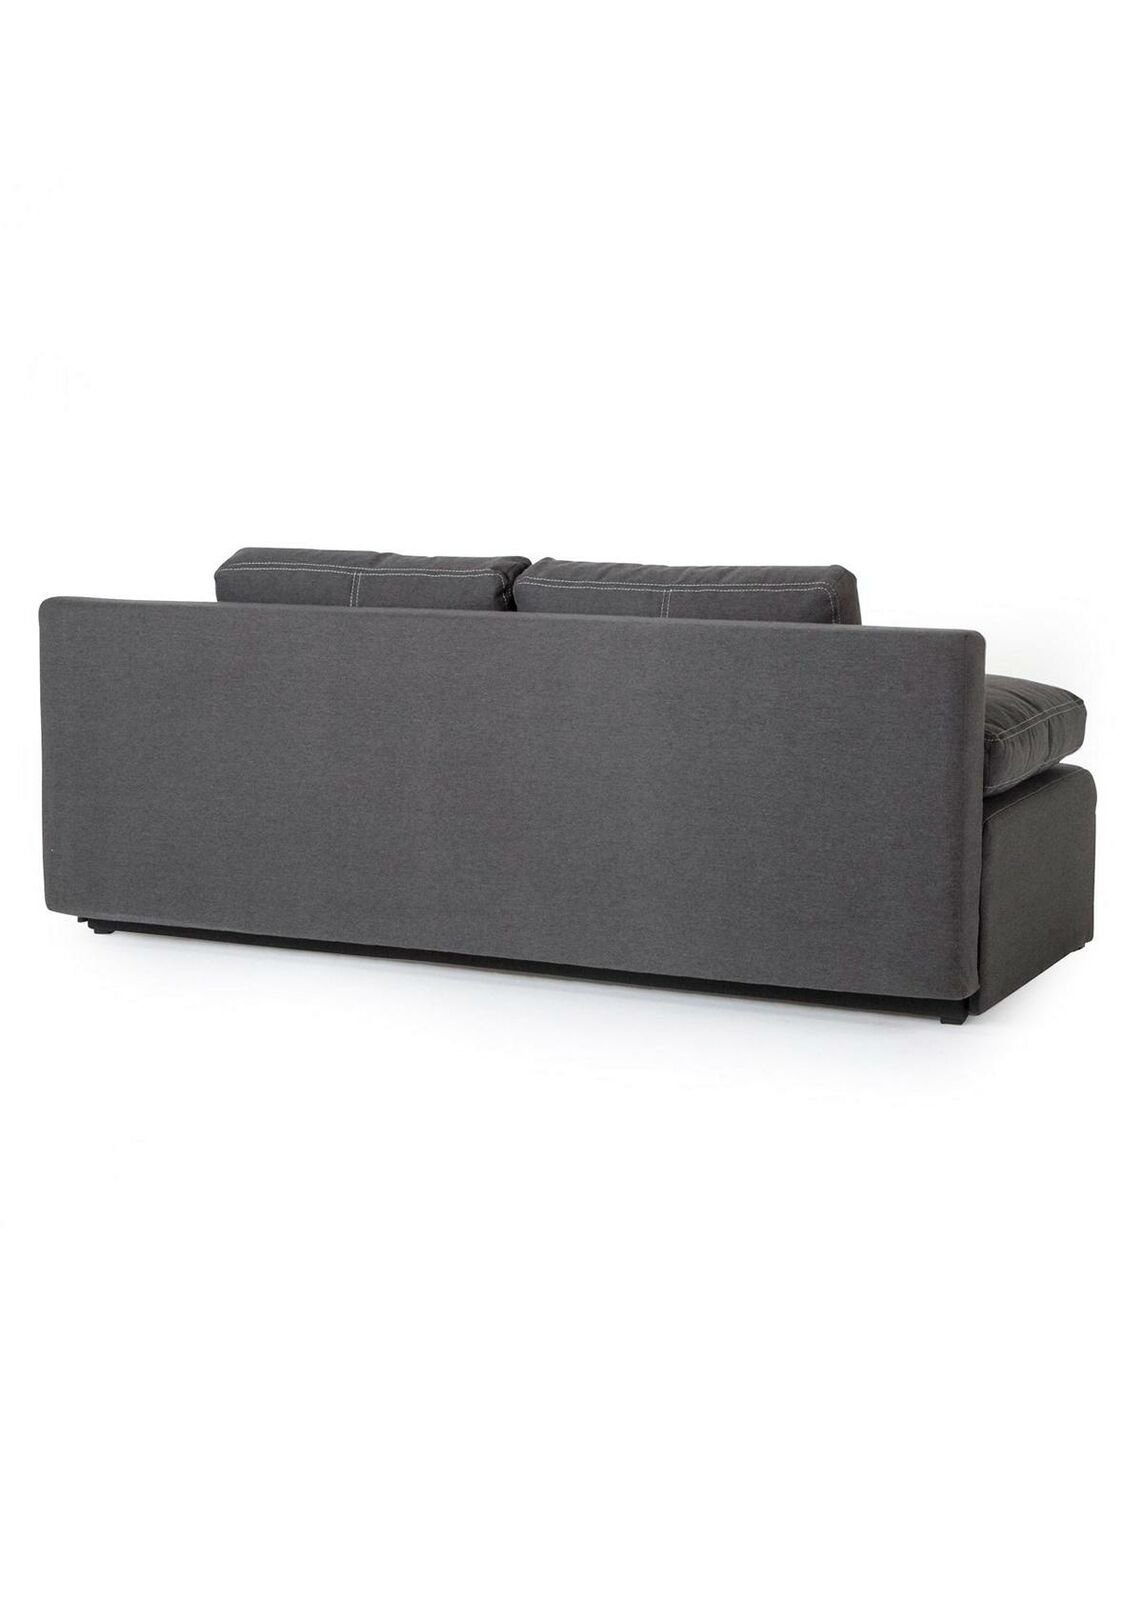 Made Europe Dreisitzer Möbel Grau Sofa Luxus Design Stoffsofa JVmoebel Neu, Couch in Grüner